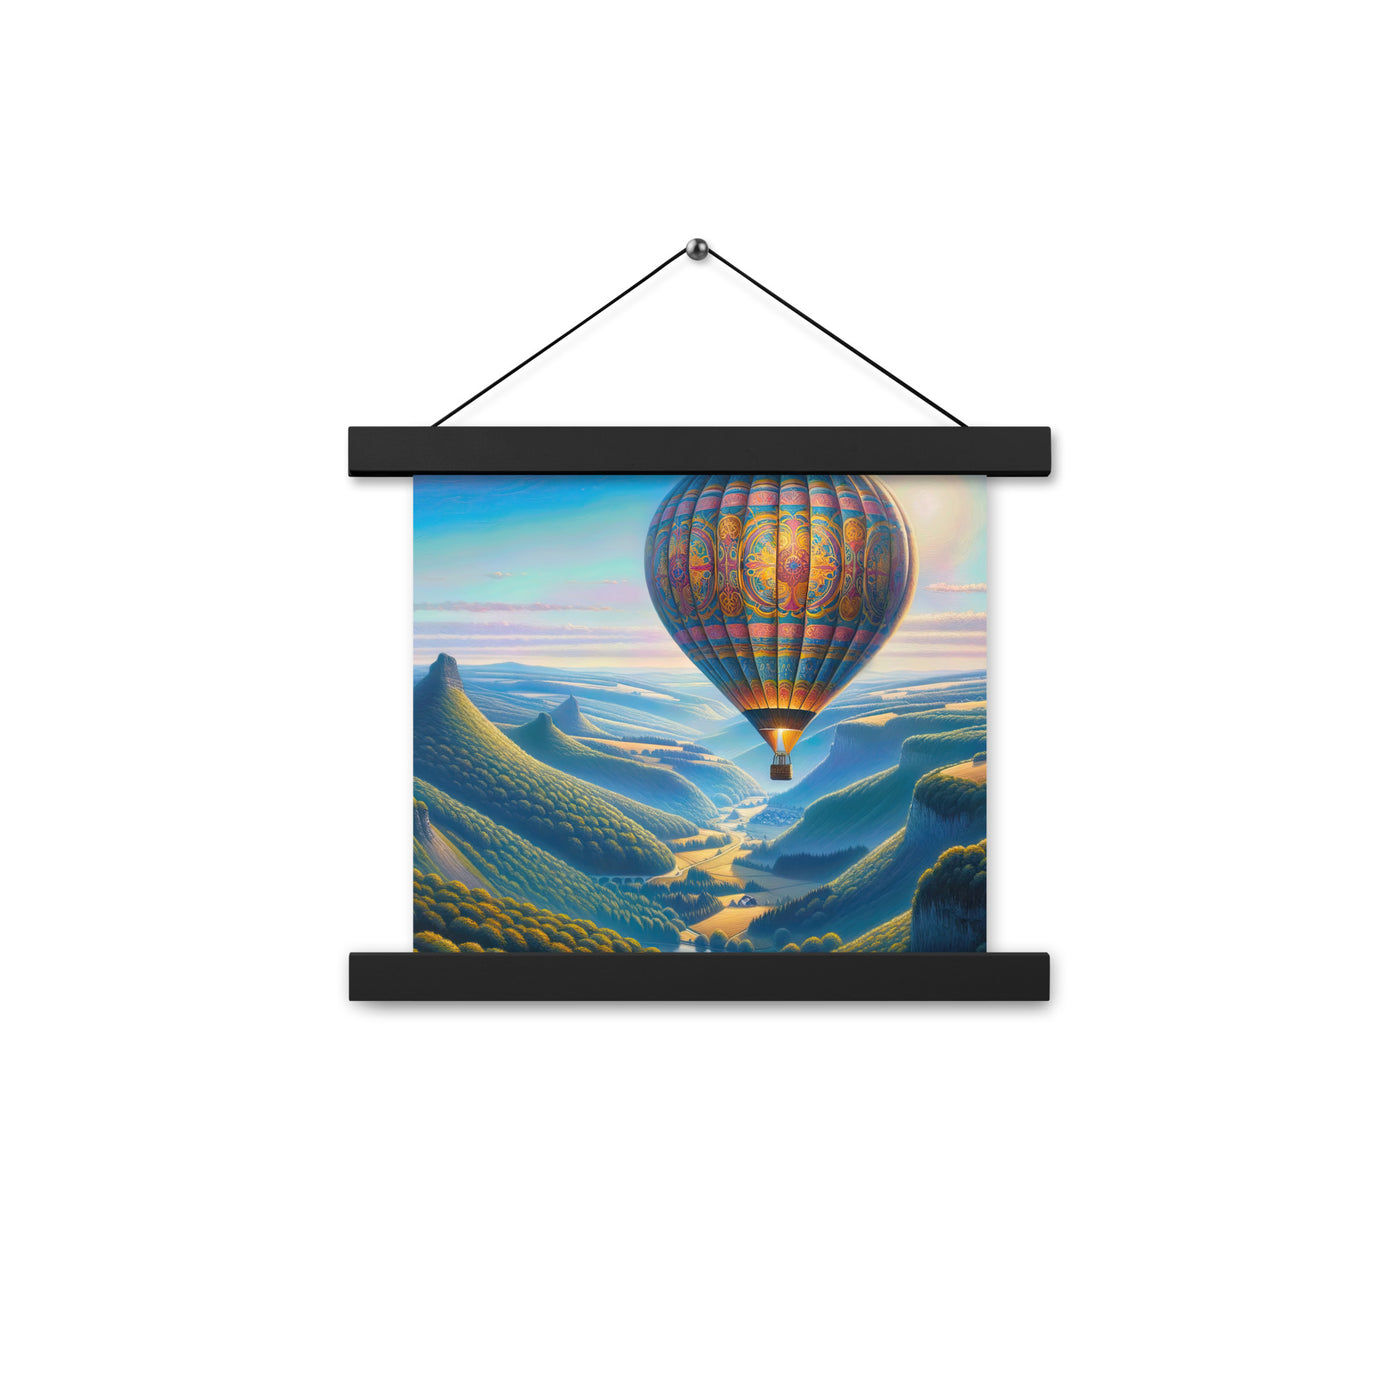 Ölgemälde einer ruhigen Szene mit verziertem Heißluftballon - Premium Poster mit Aufhängung berge xxx yyy zzz 25.4 x 25.4 cm